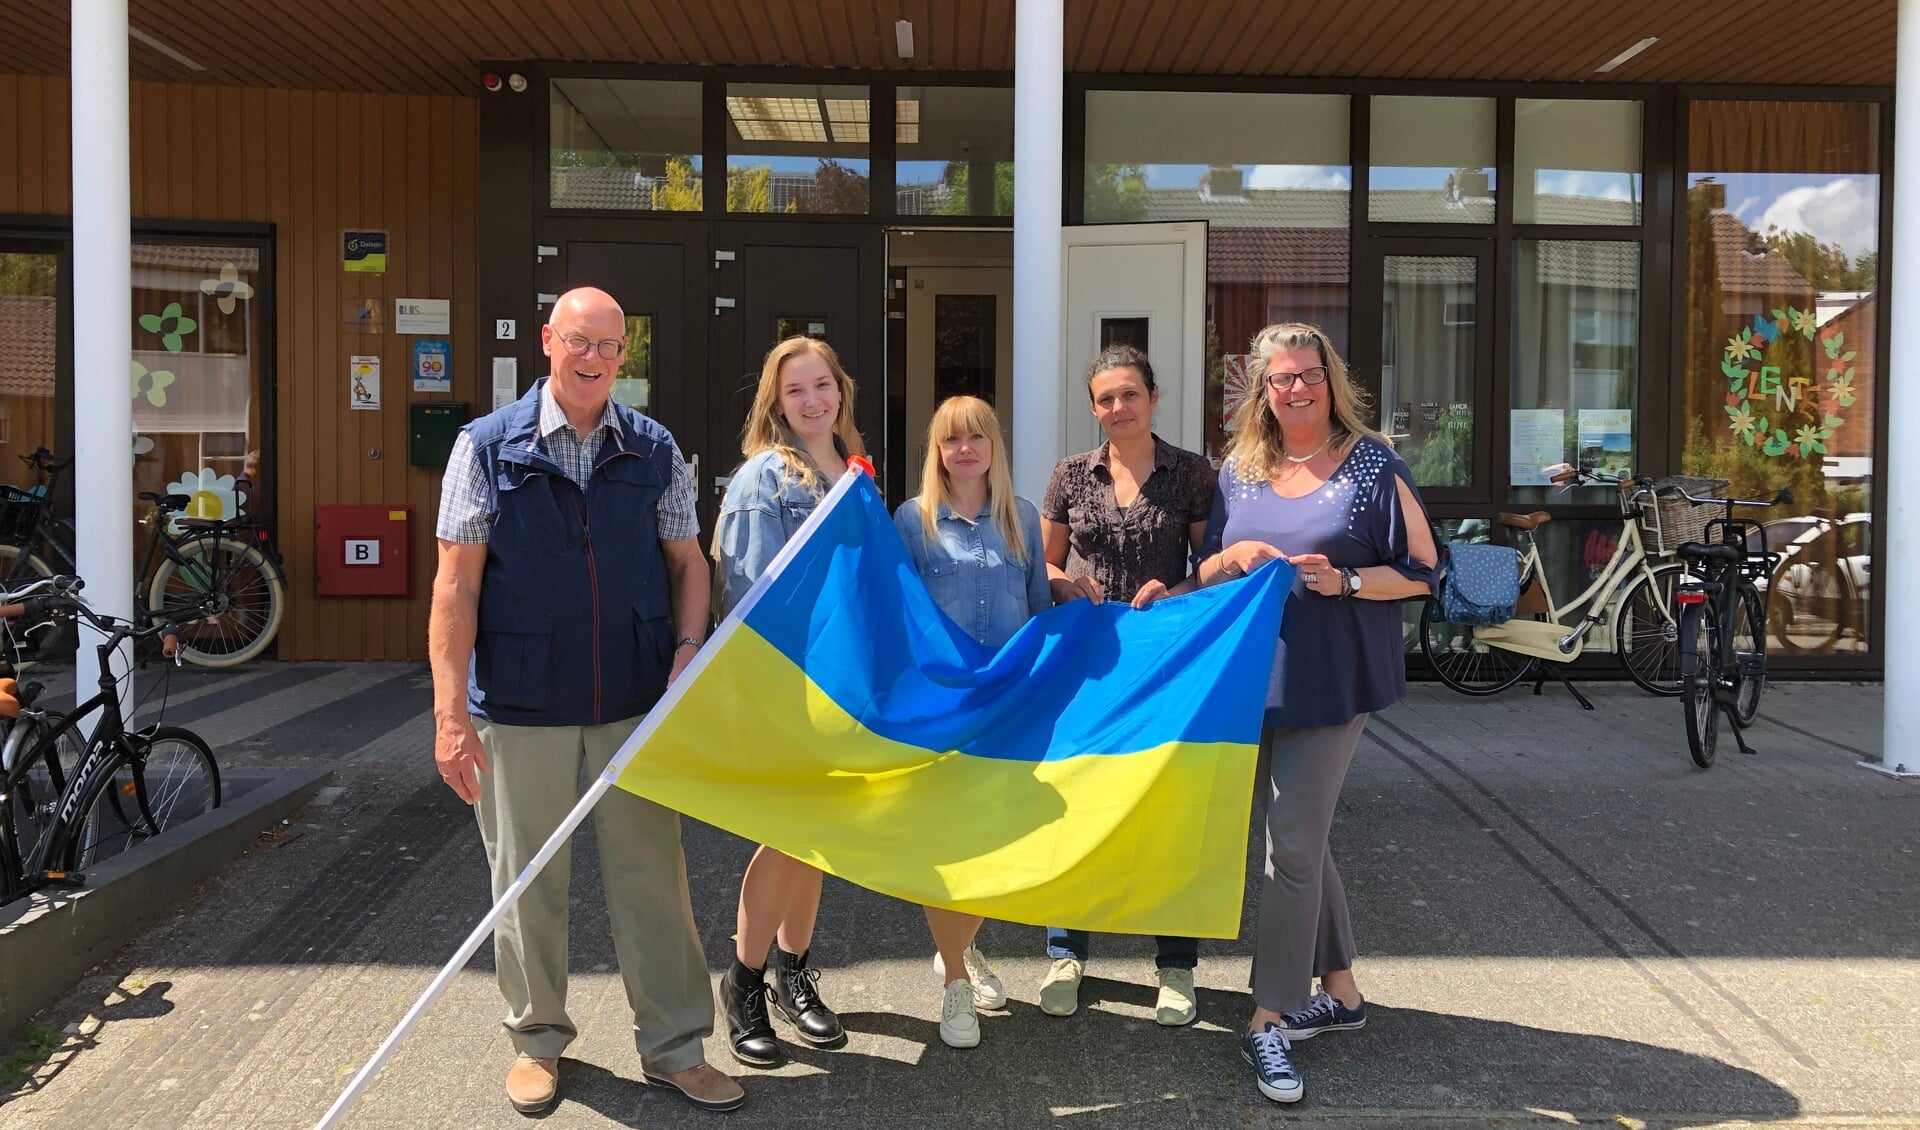 Team Oekraïne v.l.r: Koos Bezemer, Maaike Bulsink, Victoria Shcherbataya, Diana Chavdar en Daphne Fiorentinos.